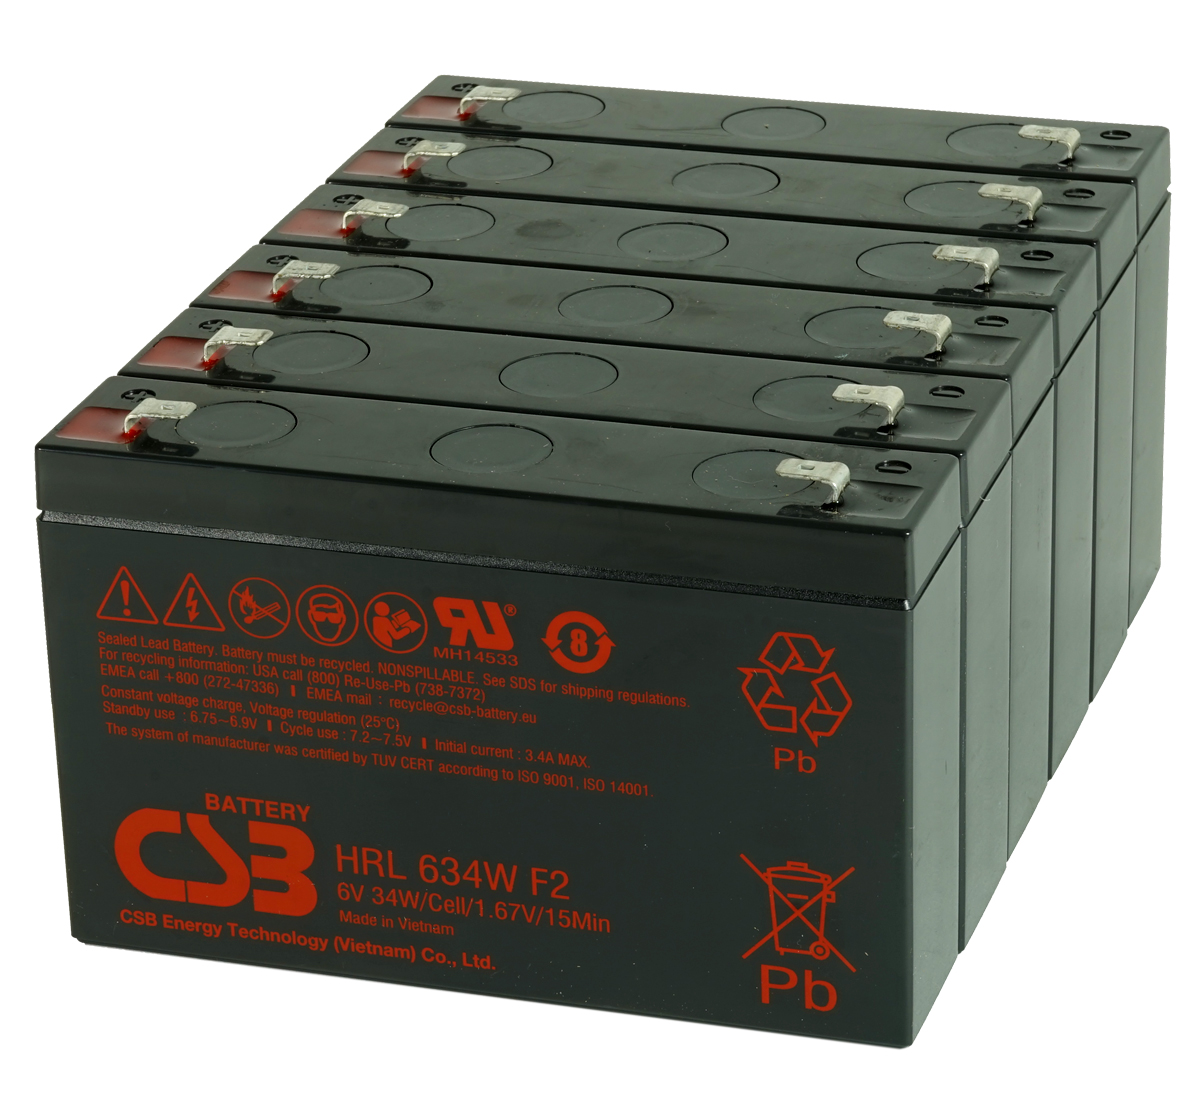 HP R1500 G2 UPS Battery Kit 418401-001